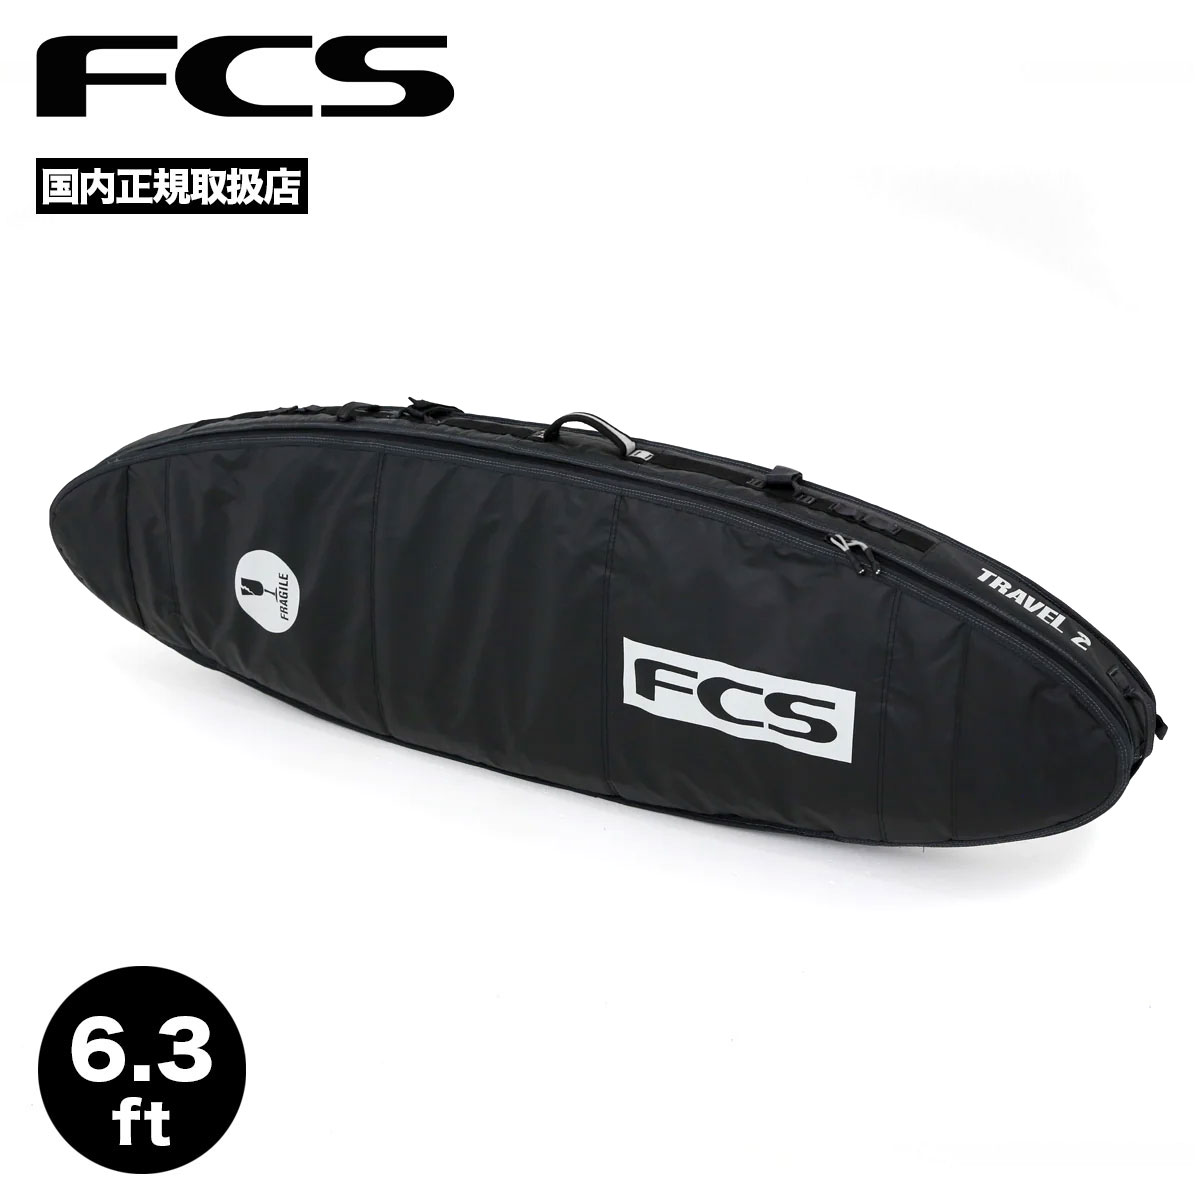 サーフボード ハードケース FCS travel2 トラベル2FCS - サーフィン 